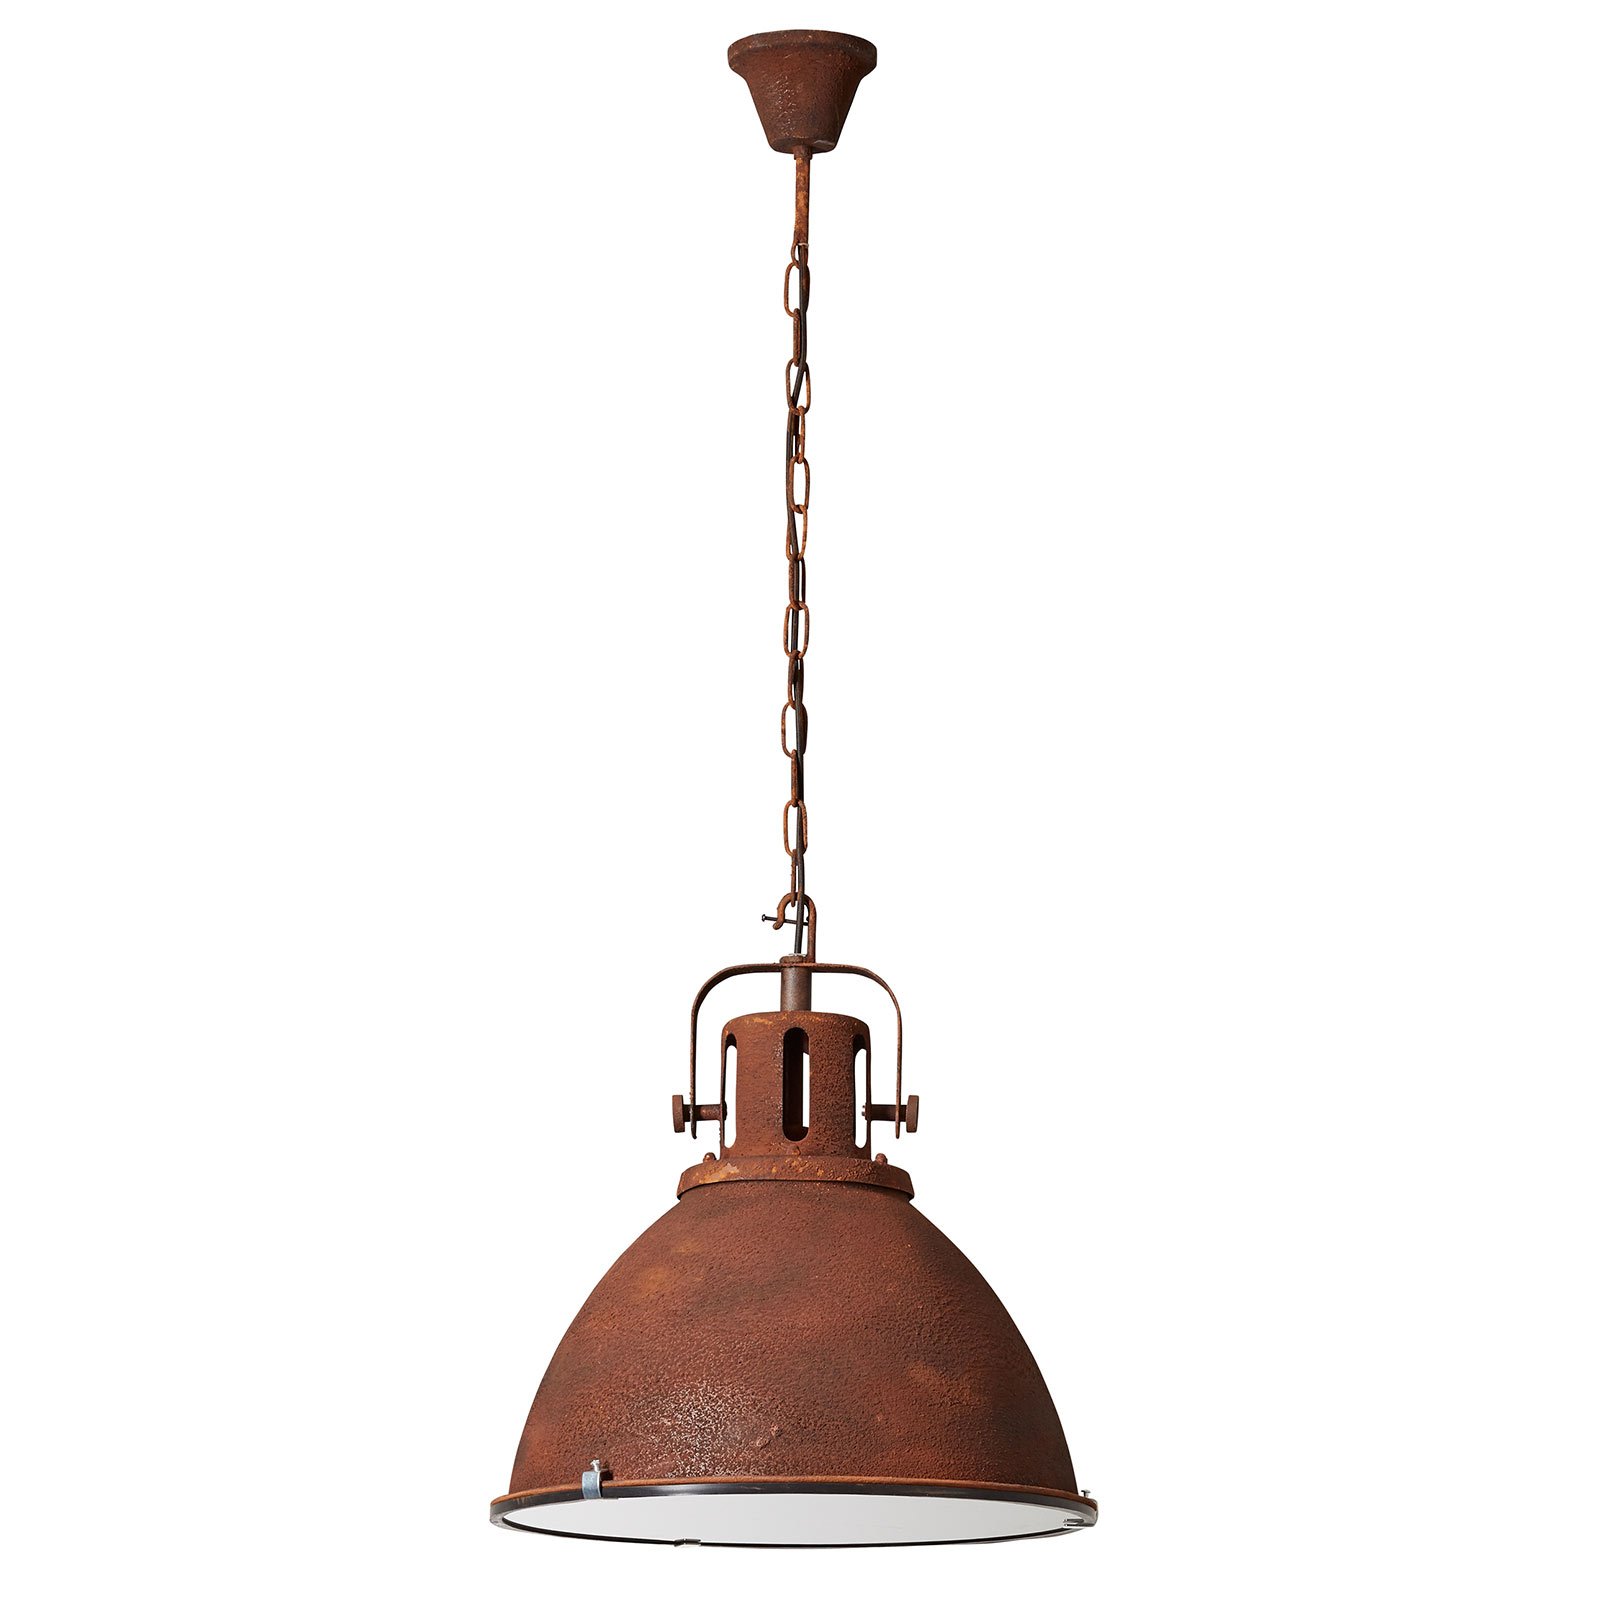 Industrijska viseča svetilka Jesper v industrijskem slogu